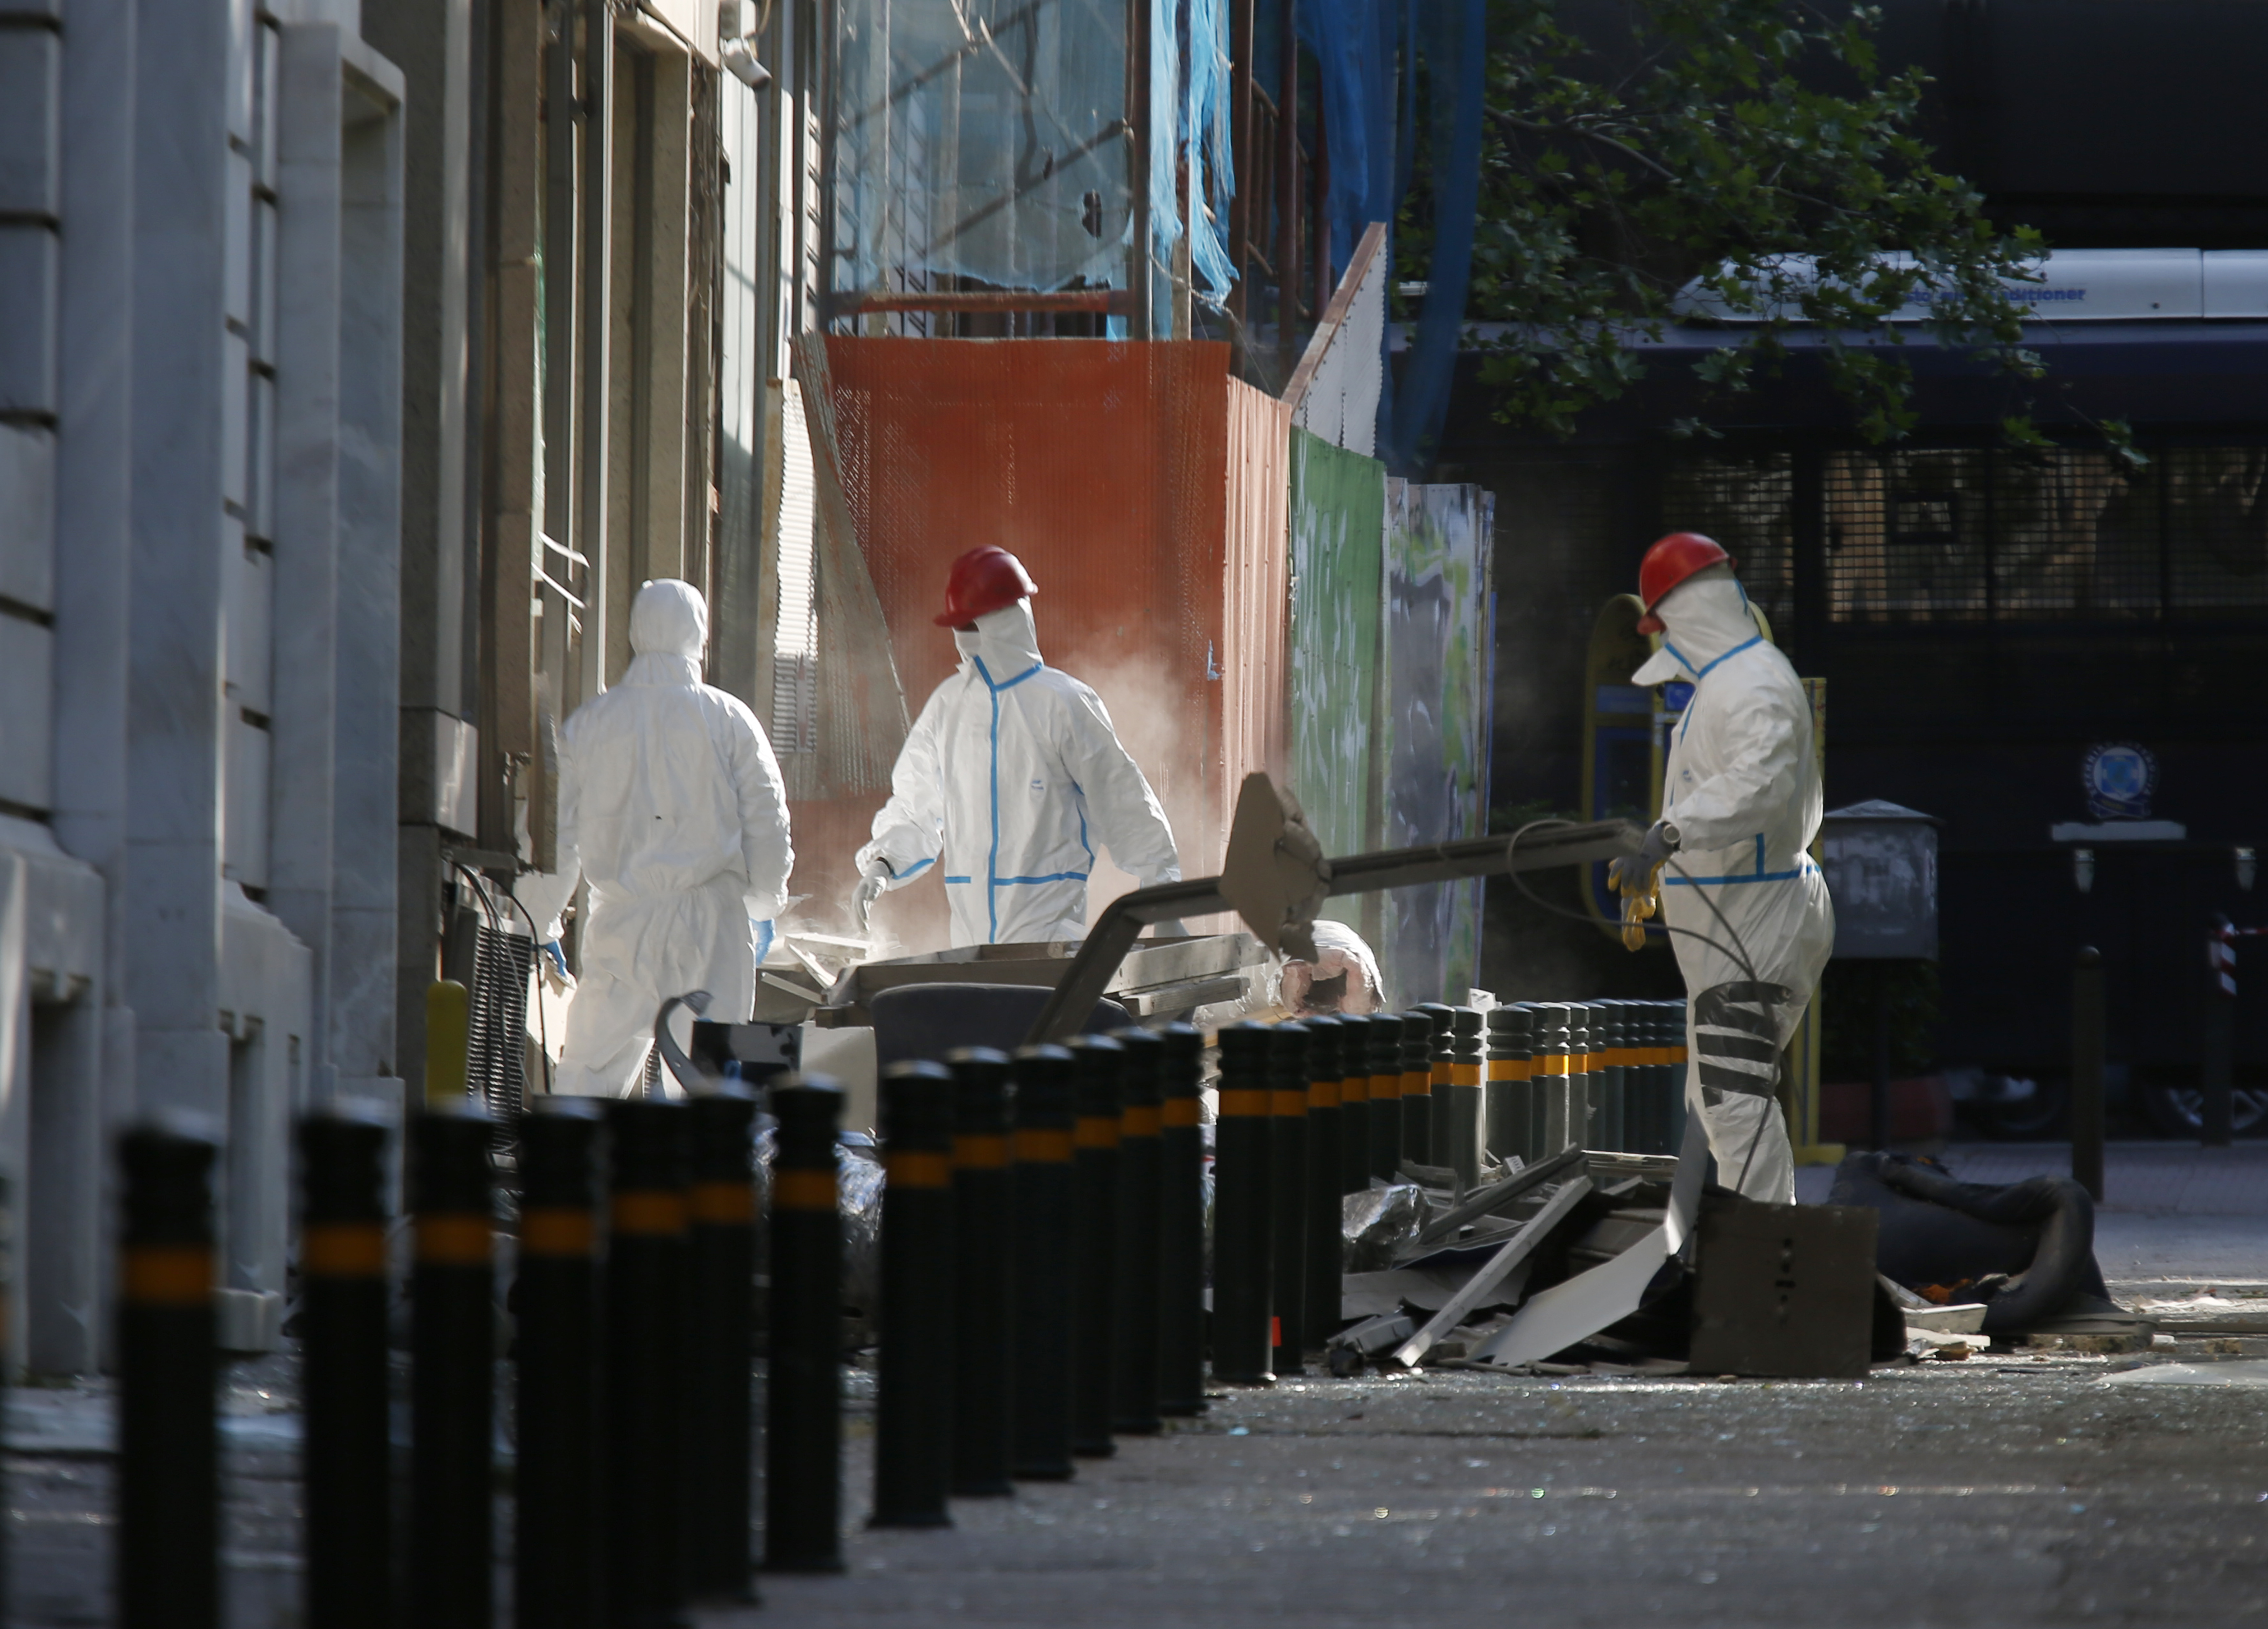 Τι έδειξαν οι κάμερες και τι είδε ο φρουρός της Eurobank στη χθεσινή έκρηξη βόμβας στο κέντρο της Αθήνας